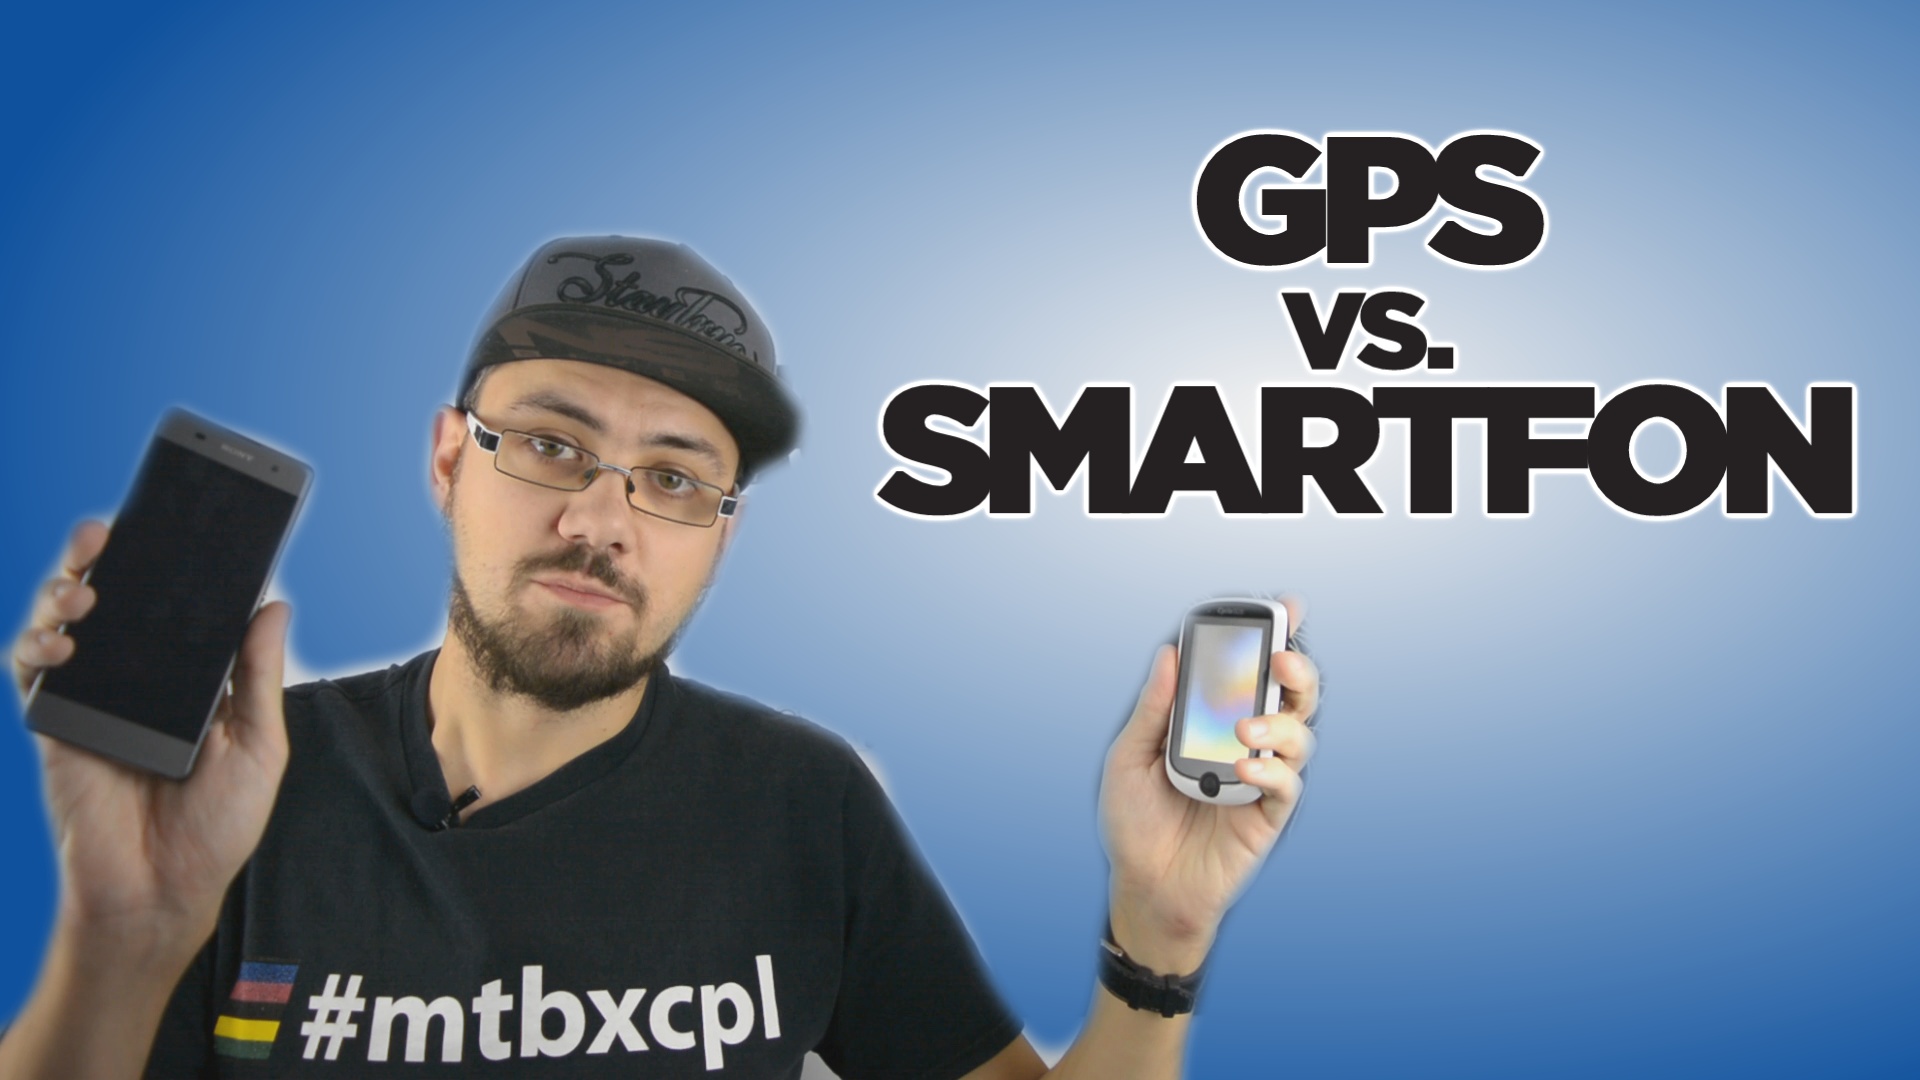 Co jest lepsze do zapisywania treningów? Smartfon czy GPS?